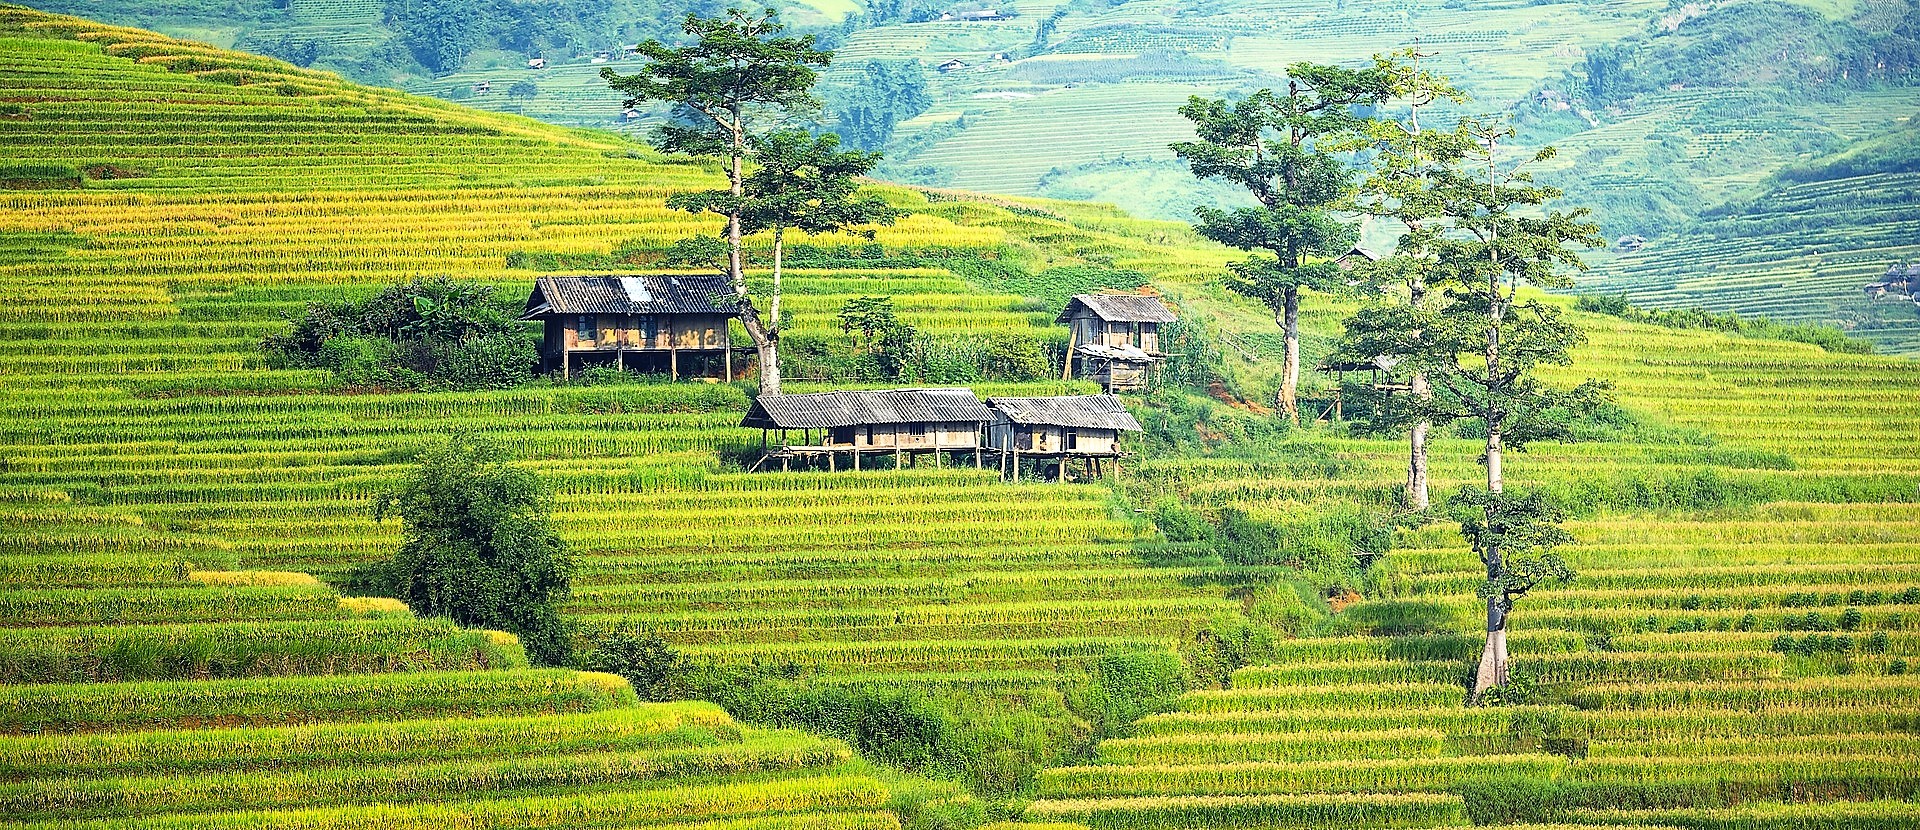 Rijstterrassen in de bergen van Sapa, Noord Vietnam